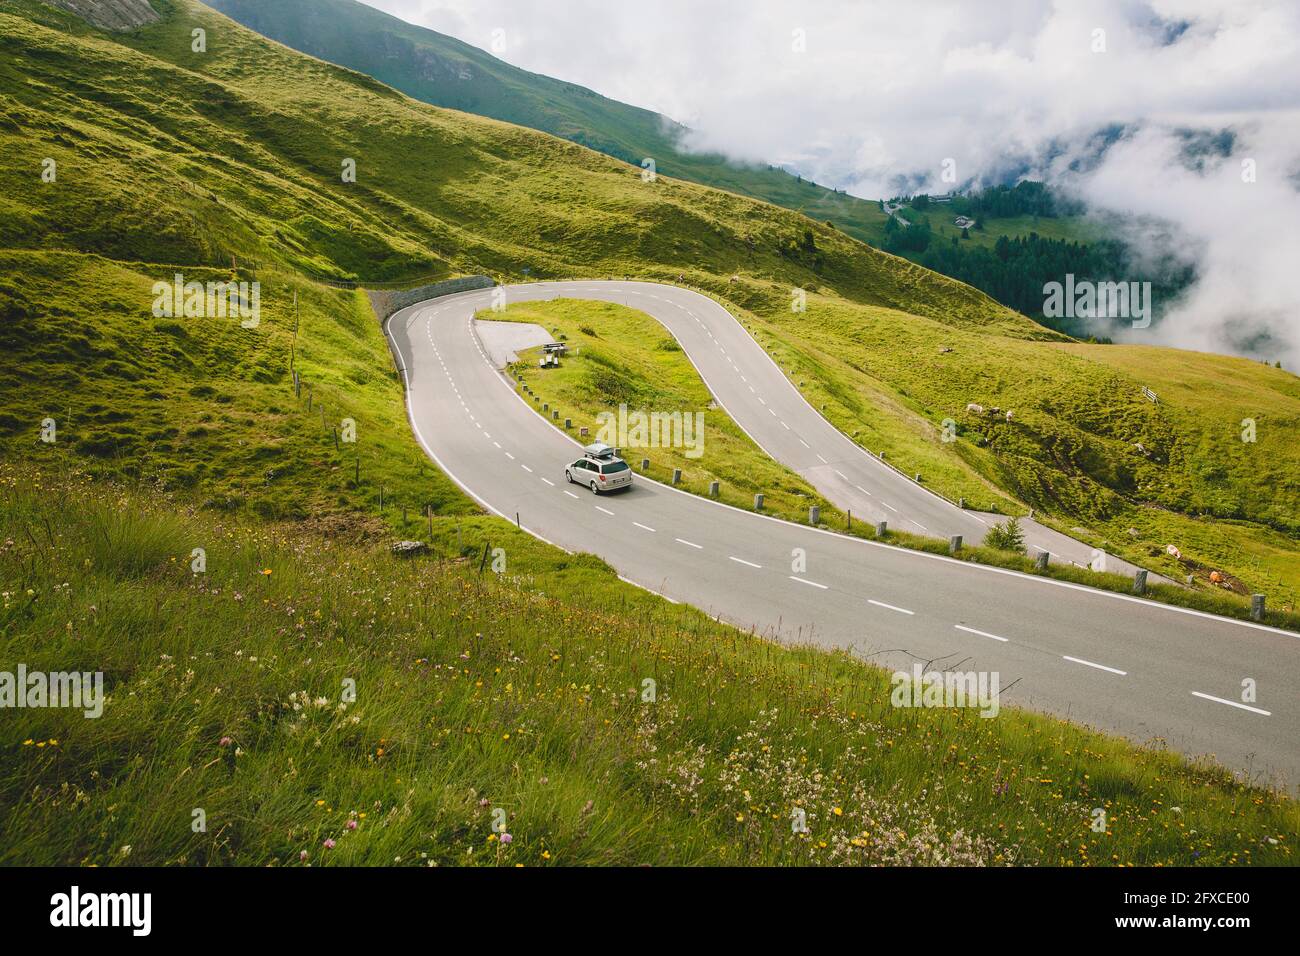 Austria, Carinzia, vista ad alto angolo dell'auto sulla strada alpina Grossglockner Foto Stock